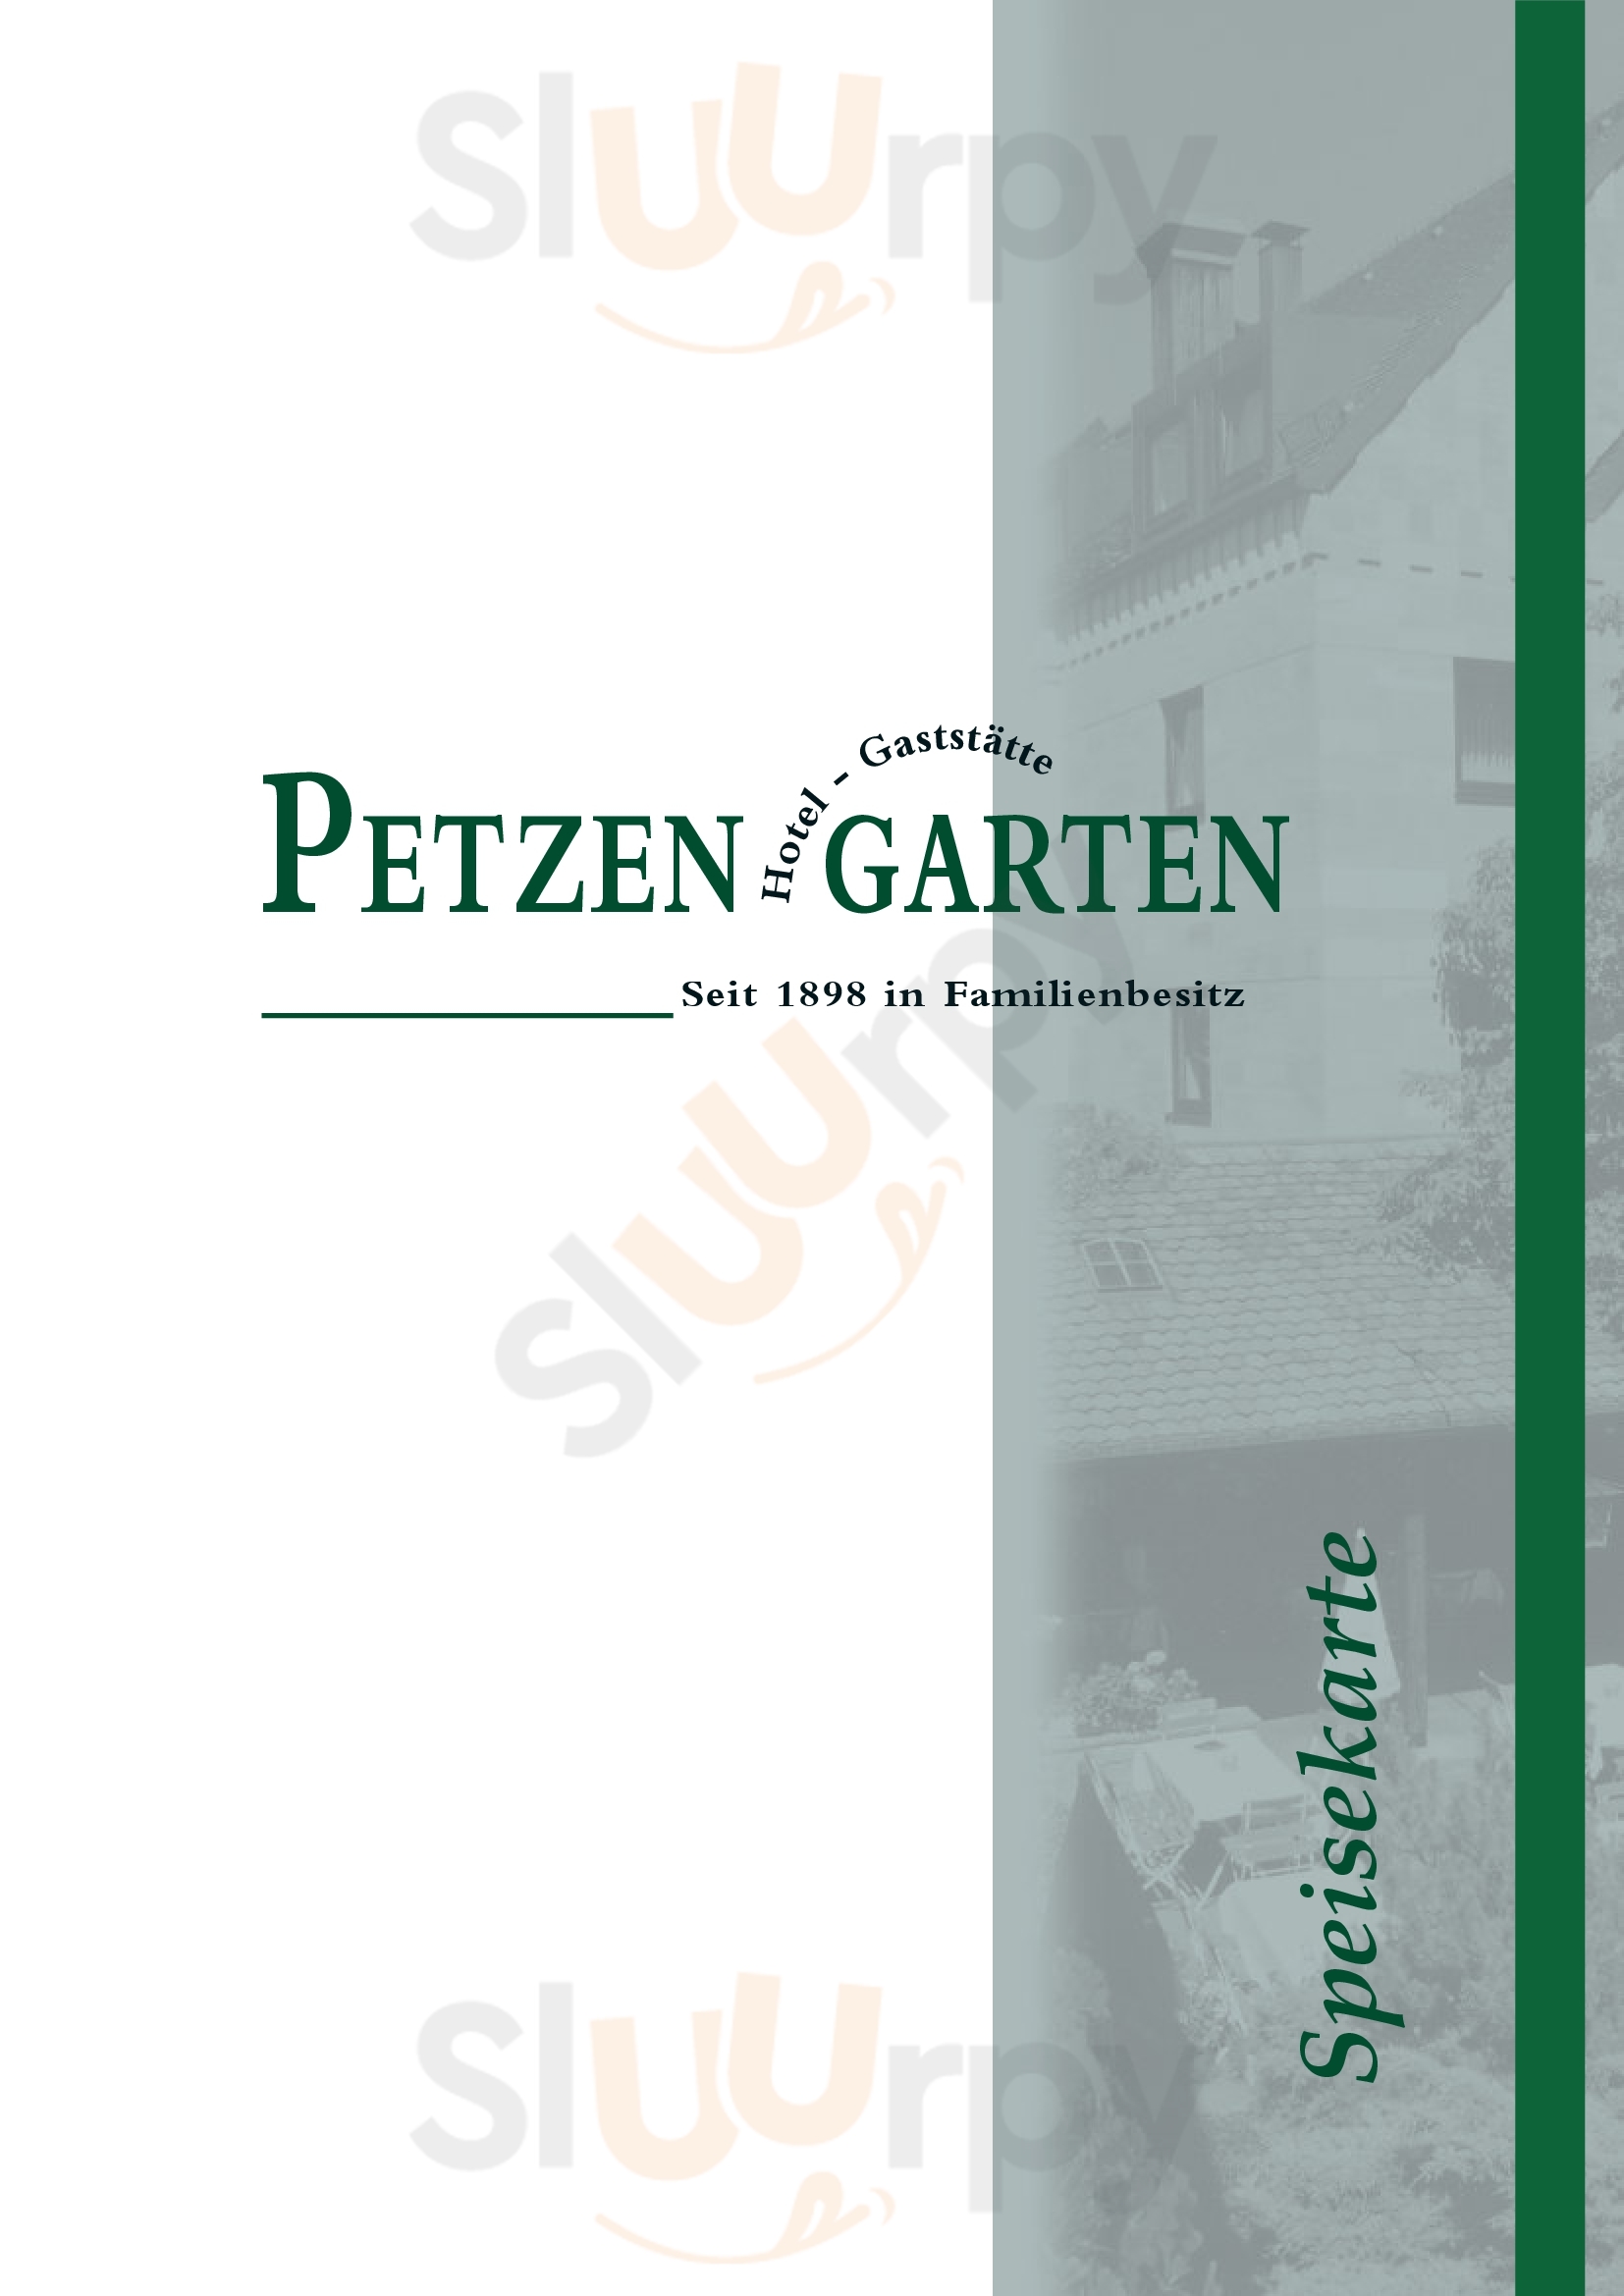 Petzengarten Nürnberg Menu - 1